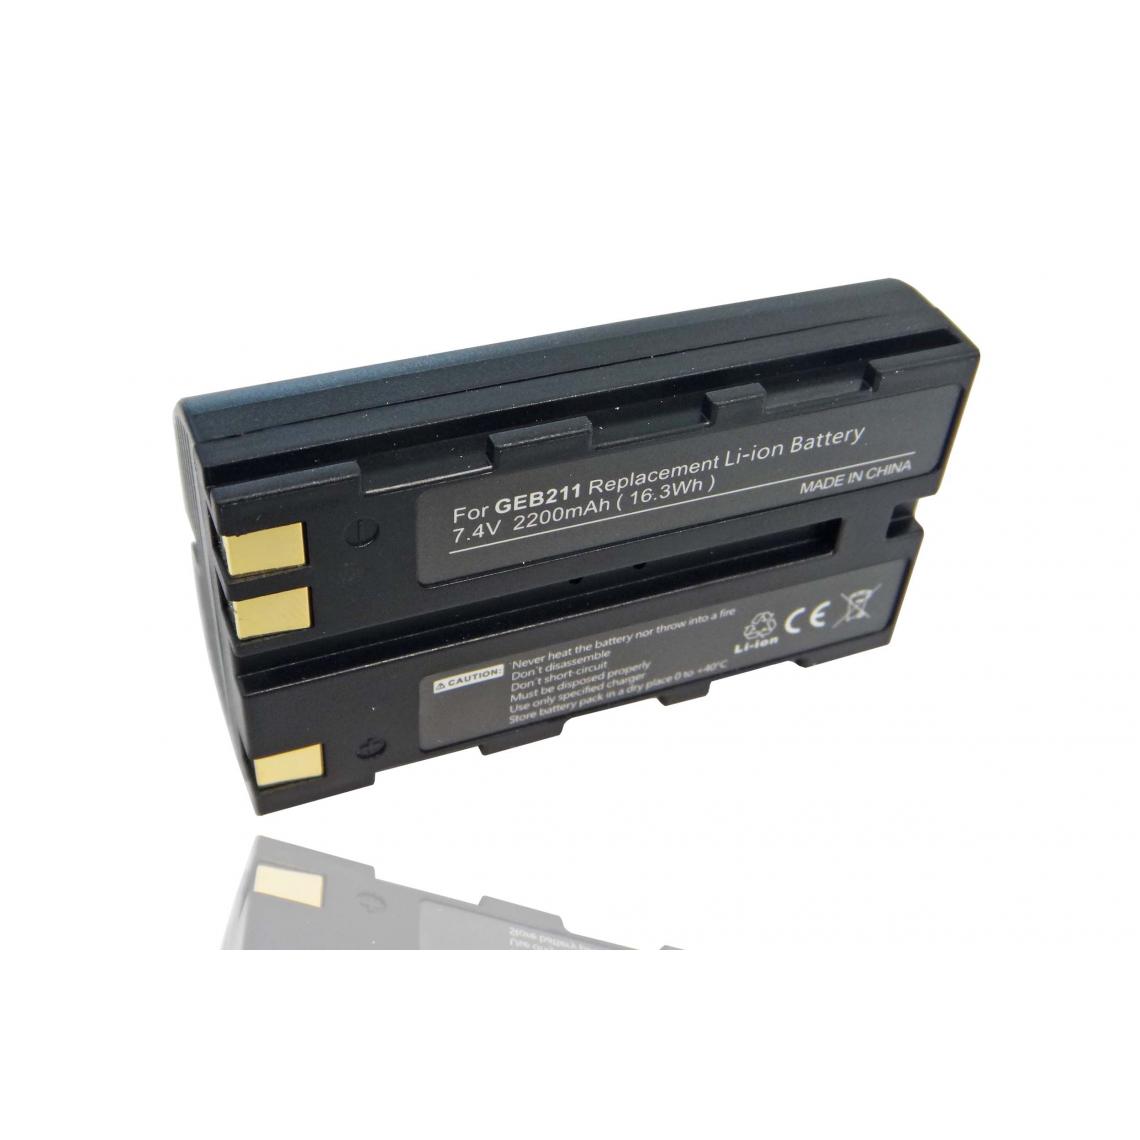 Vhbw - vhbw Batterie compatible avec Leica SR530 GPS, Stonex R6+ dispositif de mesure laser, outil de mesure (2200mAh, 7,4V, Li-ion) - Piles rechargeables